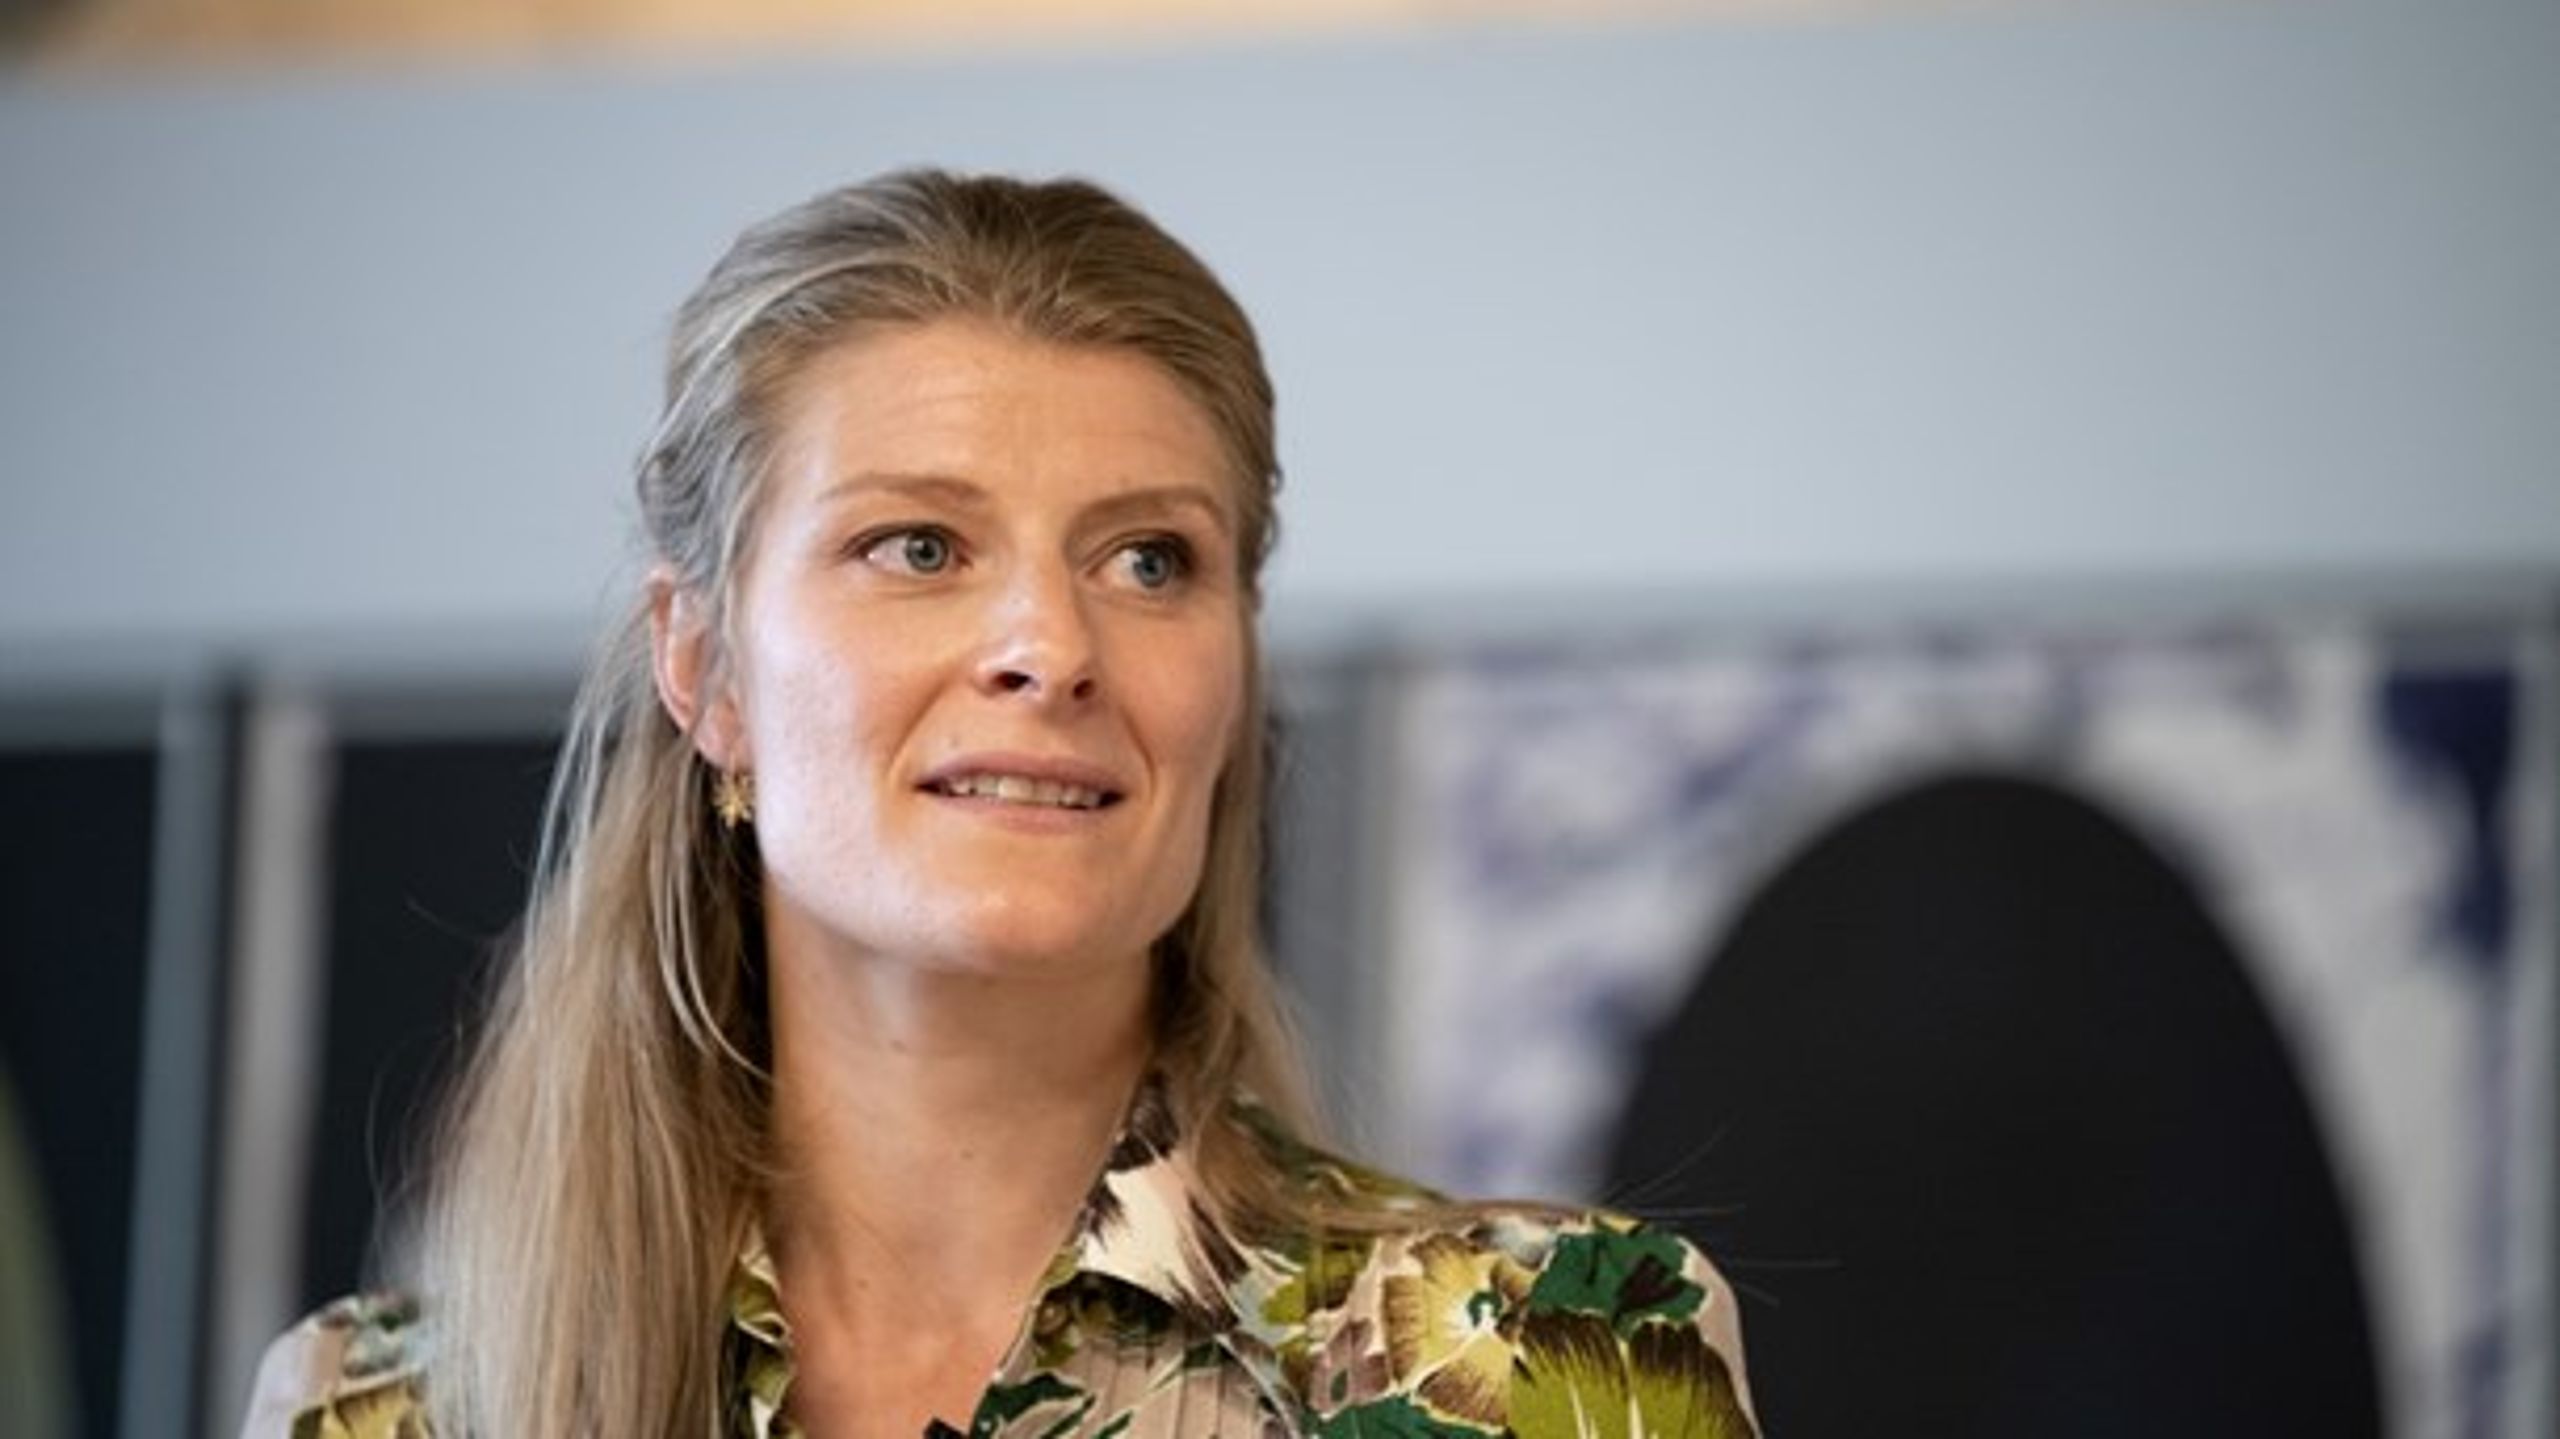 Uddannelses- og forskningsminister Ane Halsboe-Jørgensen får en lille positiv karakter af befolkningen i en ny måling.<br>